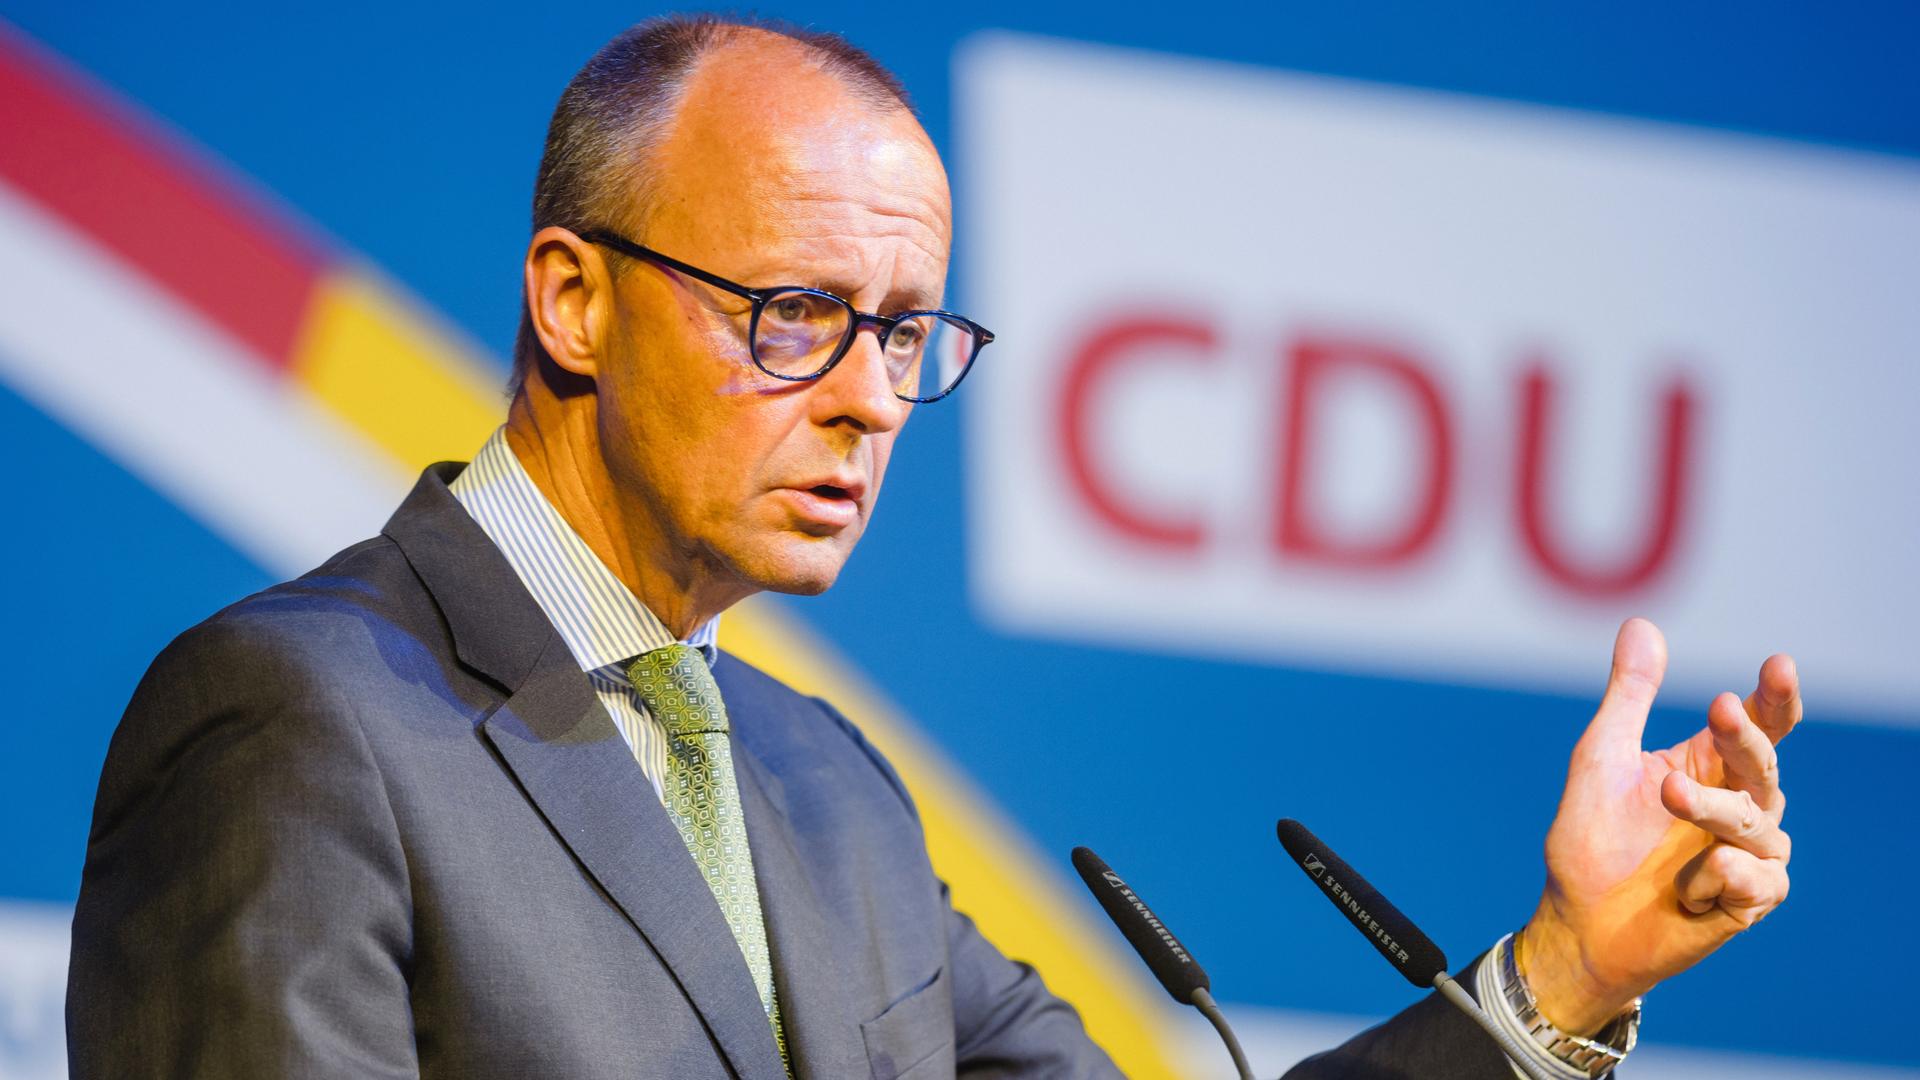 Der CDU-Parteivorsitzende Friedrich Merz gestikuliert während einer Rede: